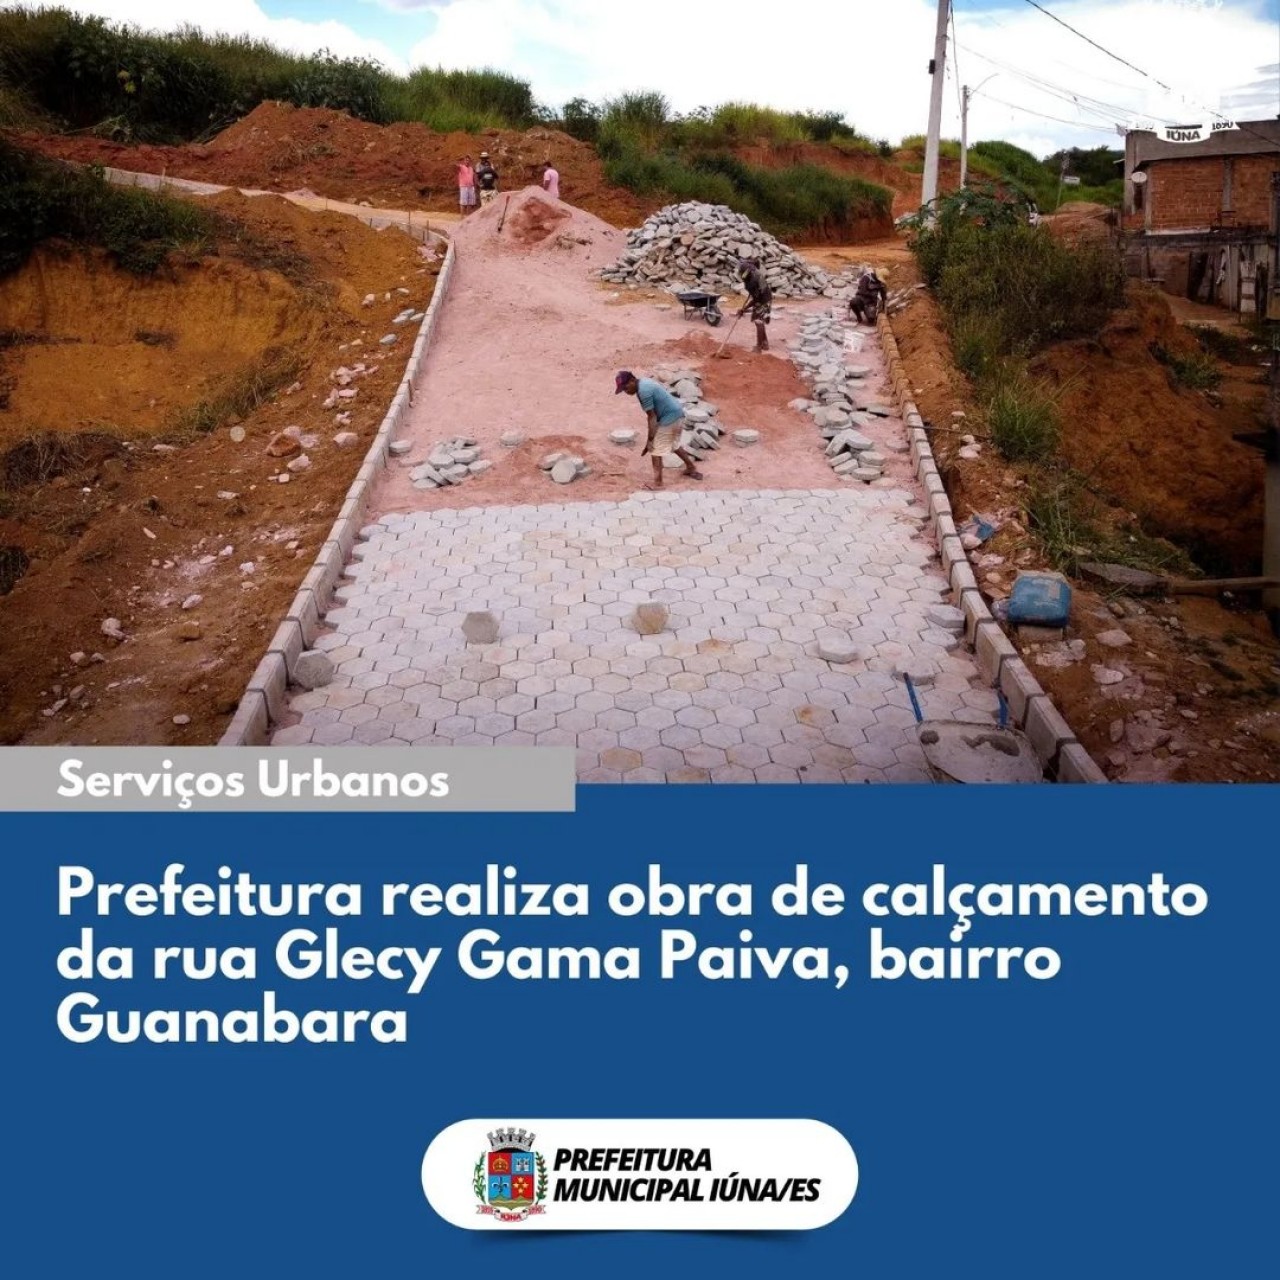 OBRA 96 - drenagem, rede de esgoto e revitalização da rua Glecy Gama Paiva, no bairro Guanabara.